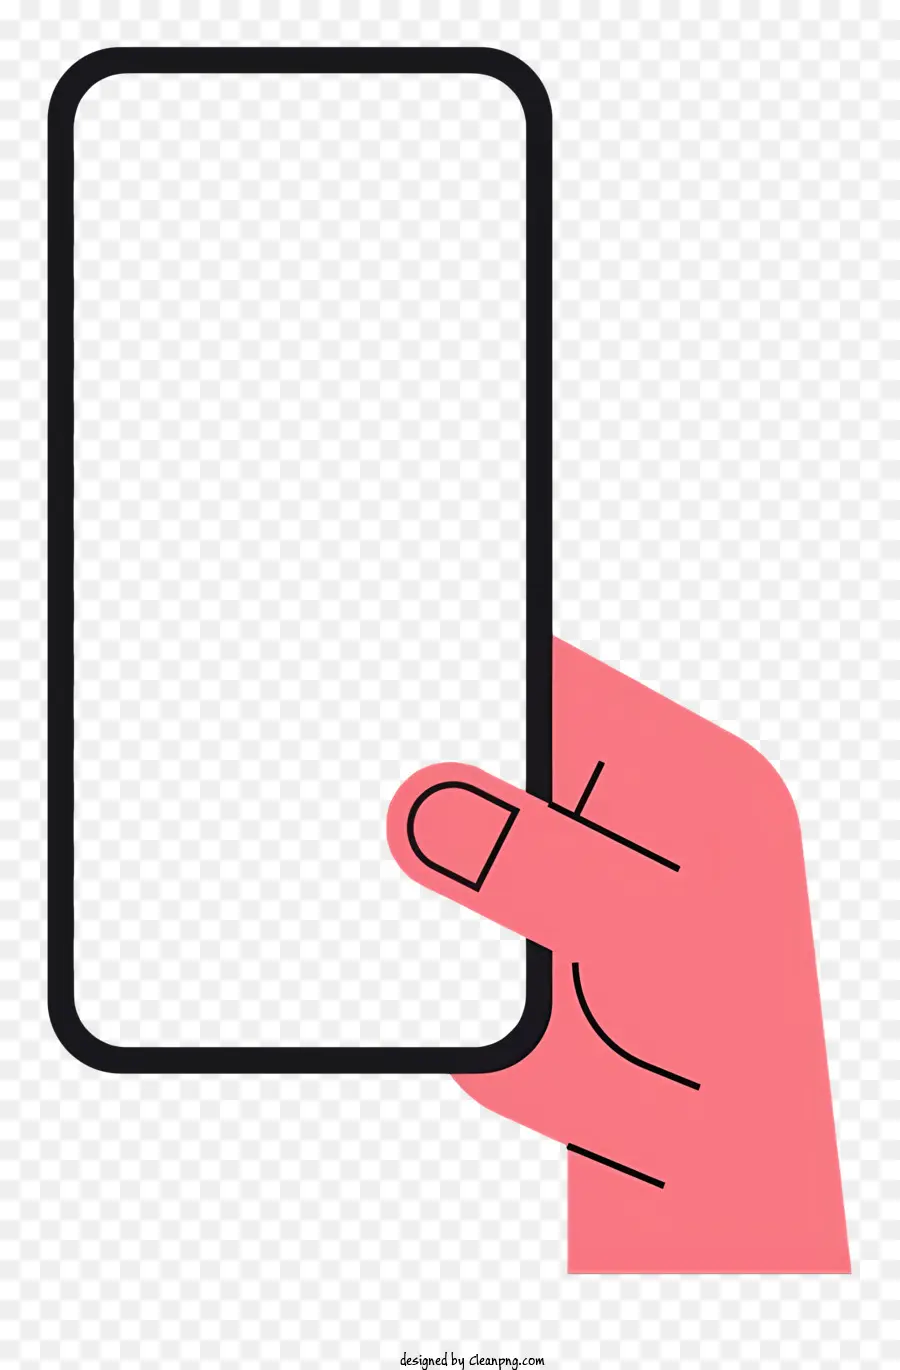 Hand Holding Smartphone Schermo su sfondo nero Posizionamento della mano naturale facile visibilità dello schermo - Hand Holding Smartphone con display sullo schermo chiaro